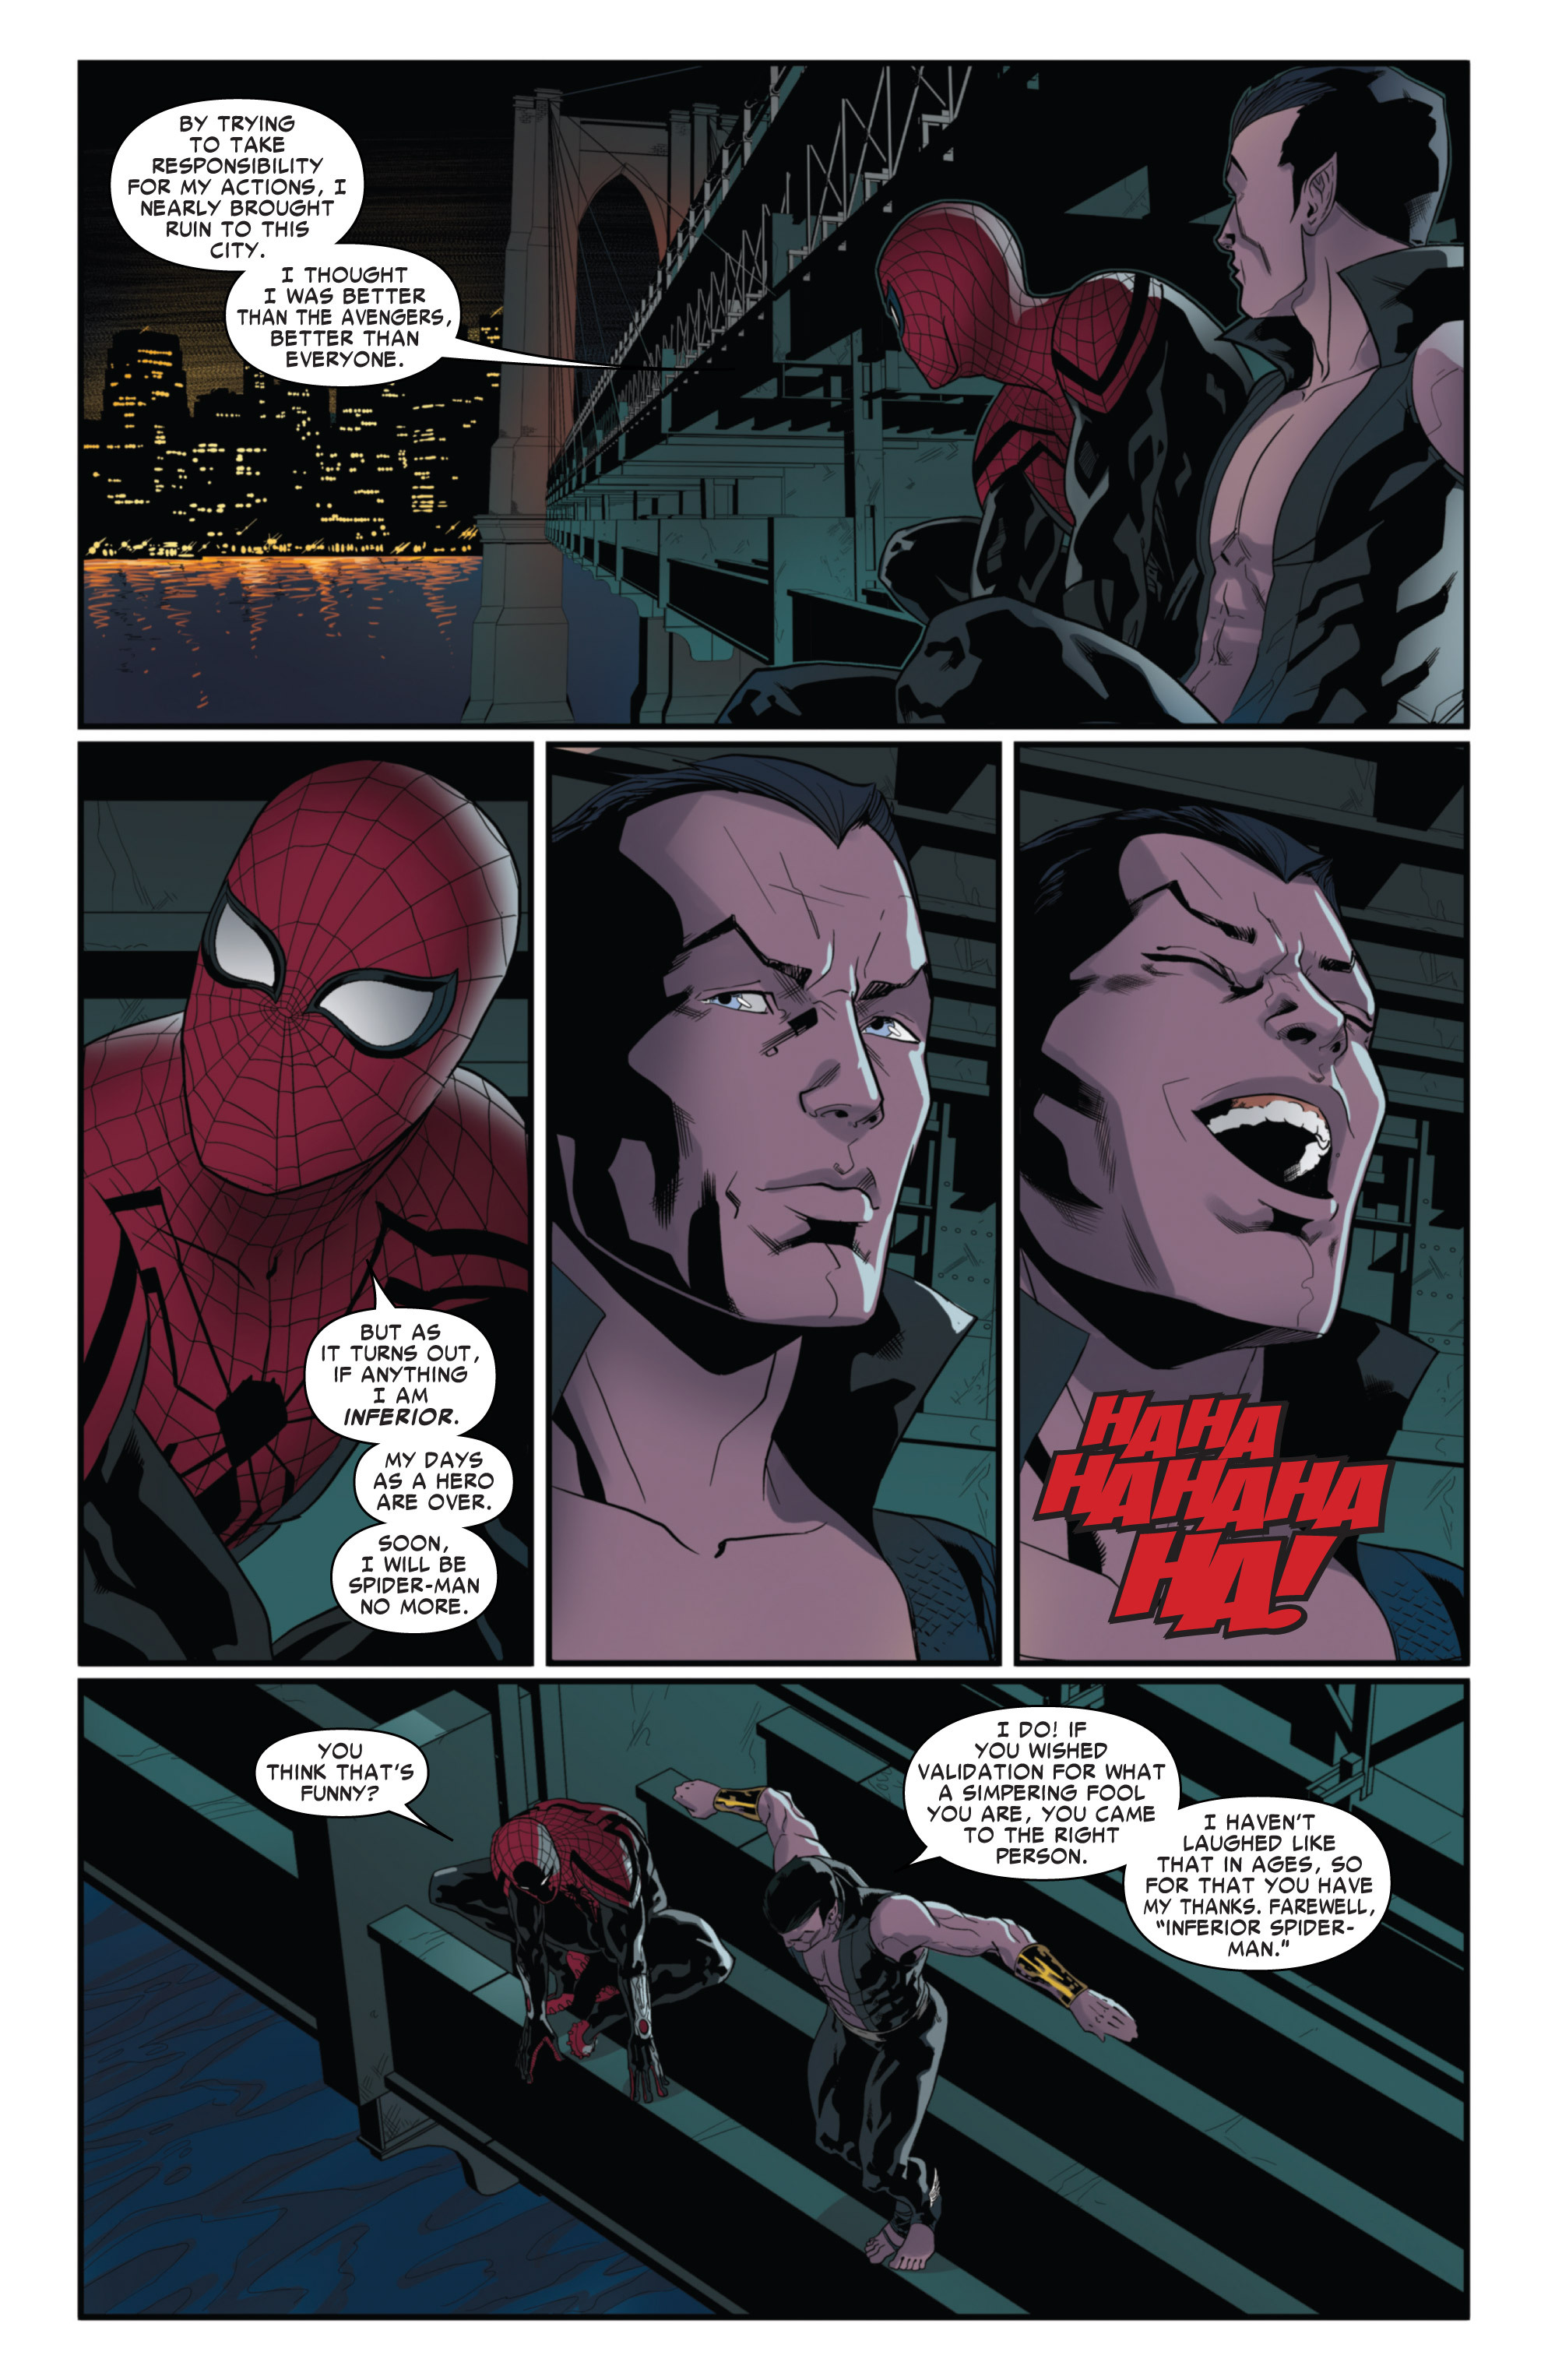 Superior Spider-Man Team-Up 008 (2014) ... 